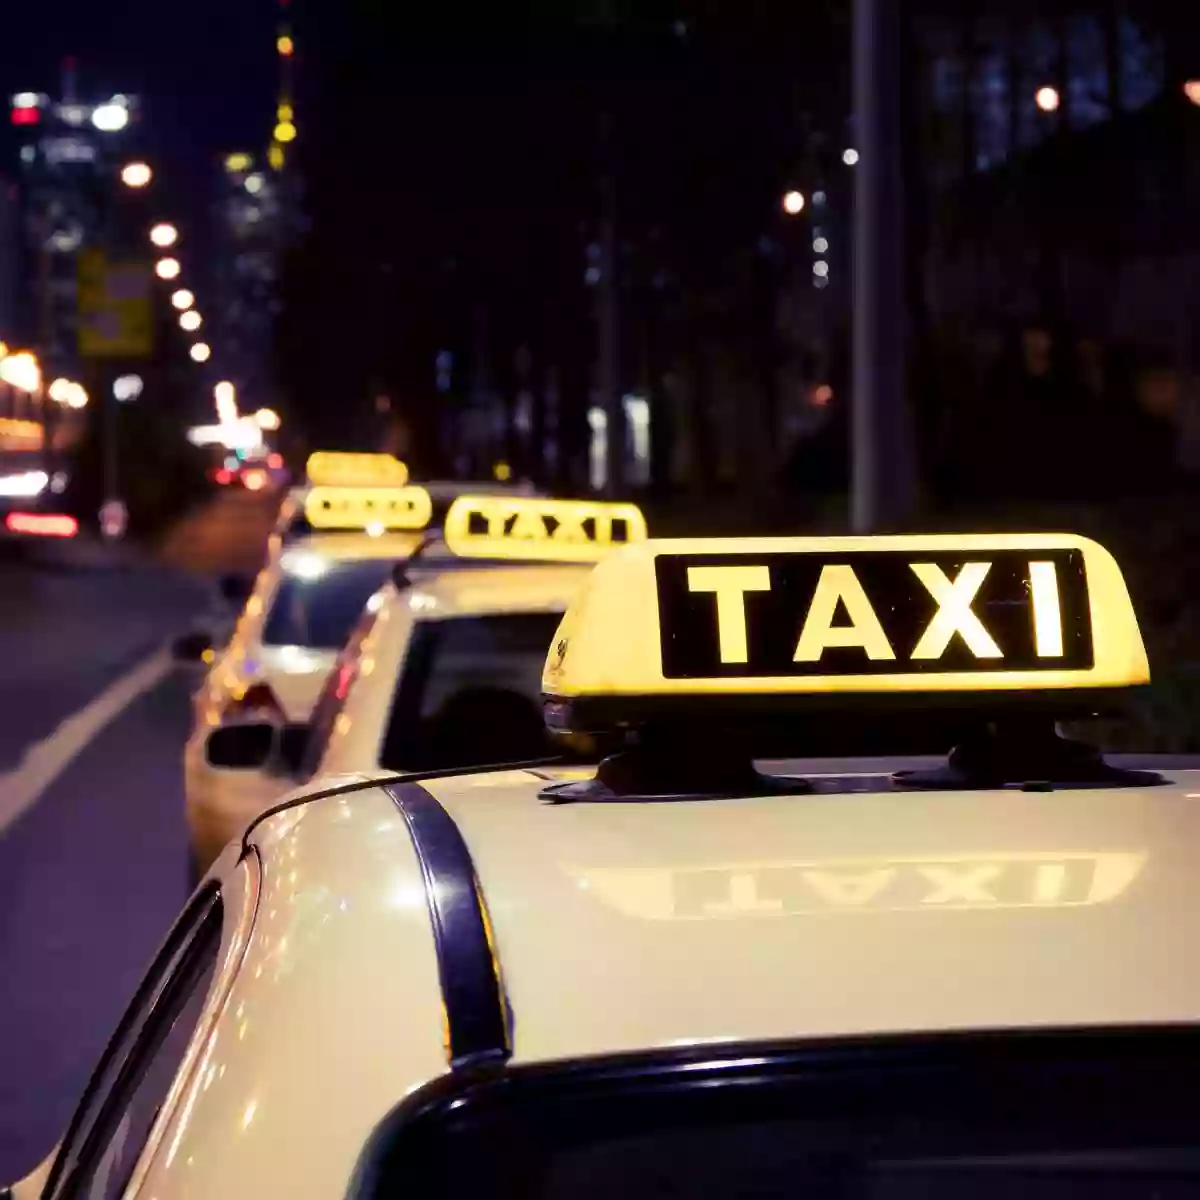 Taxi-Kurierdienst Andreas Link